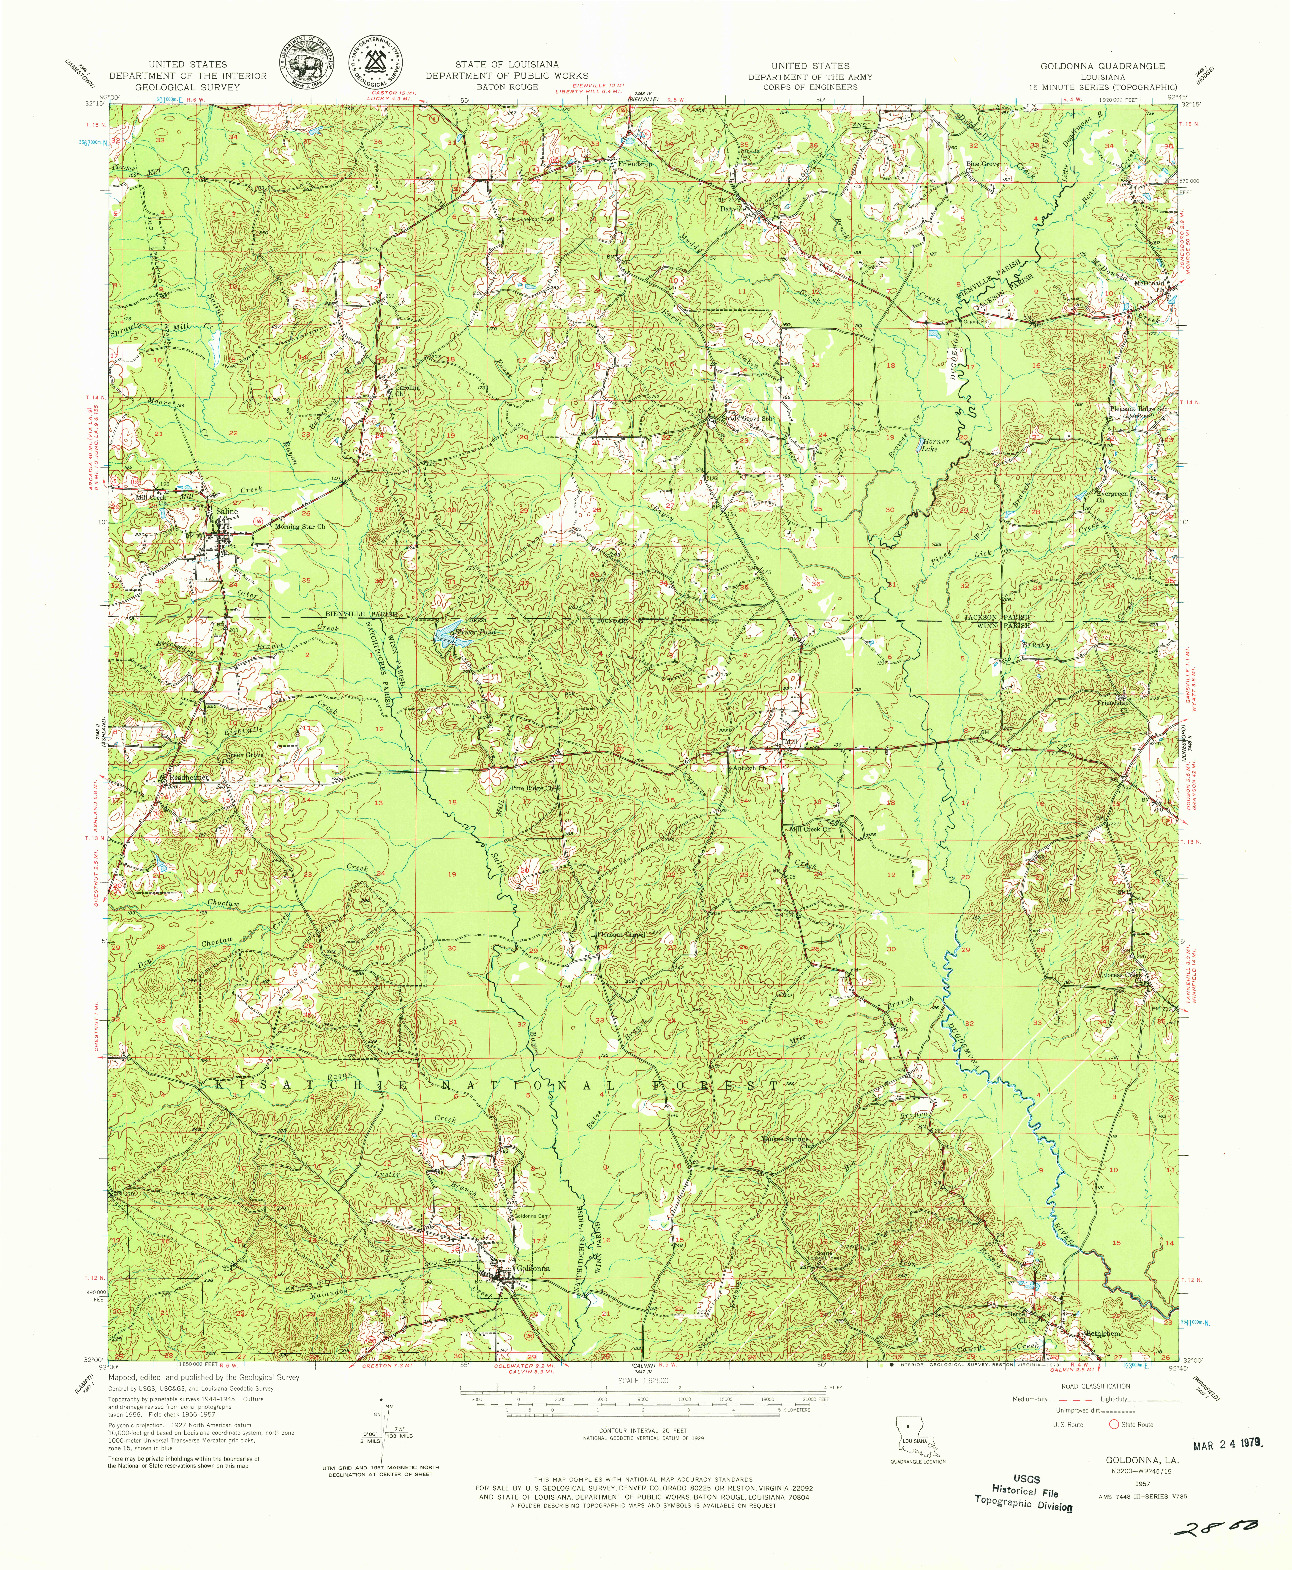 USGS 1:62500-SCALE QUADRANGLE FOR GOLDONNA, LA 1957